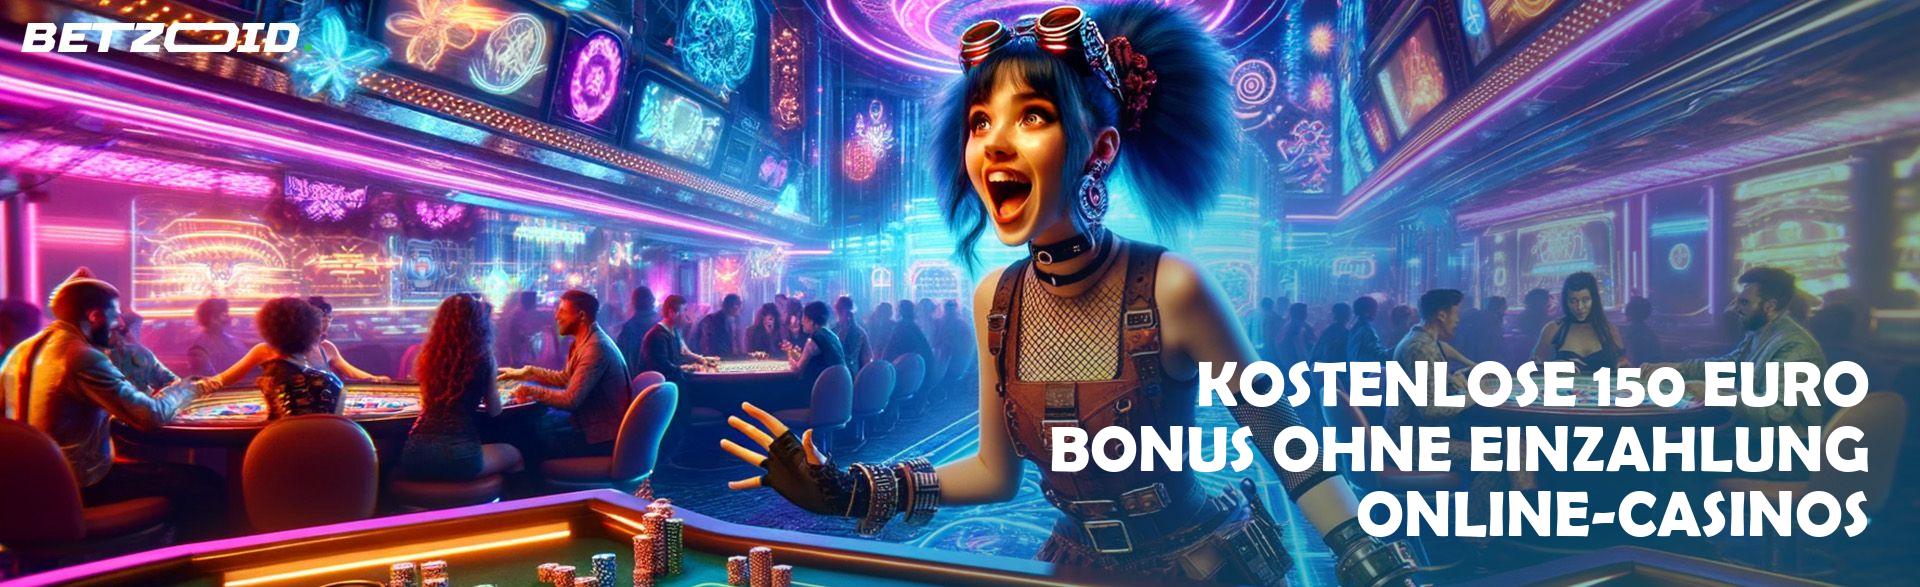 Kostenlose 150 Euro Bonus ohne Einzahlung Online-Casinos.